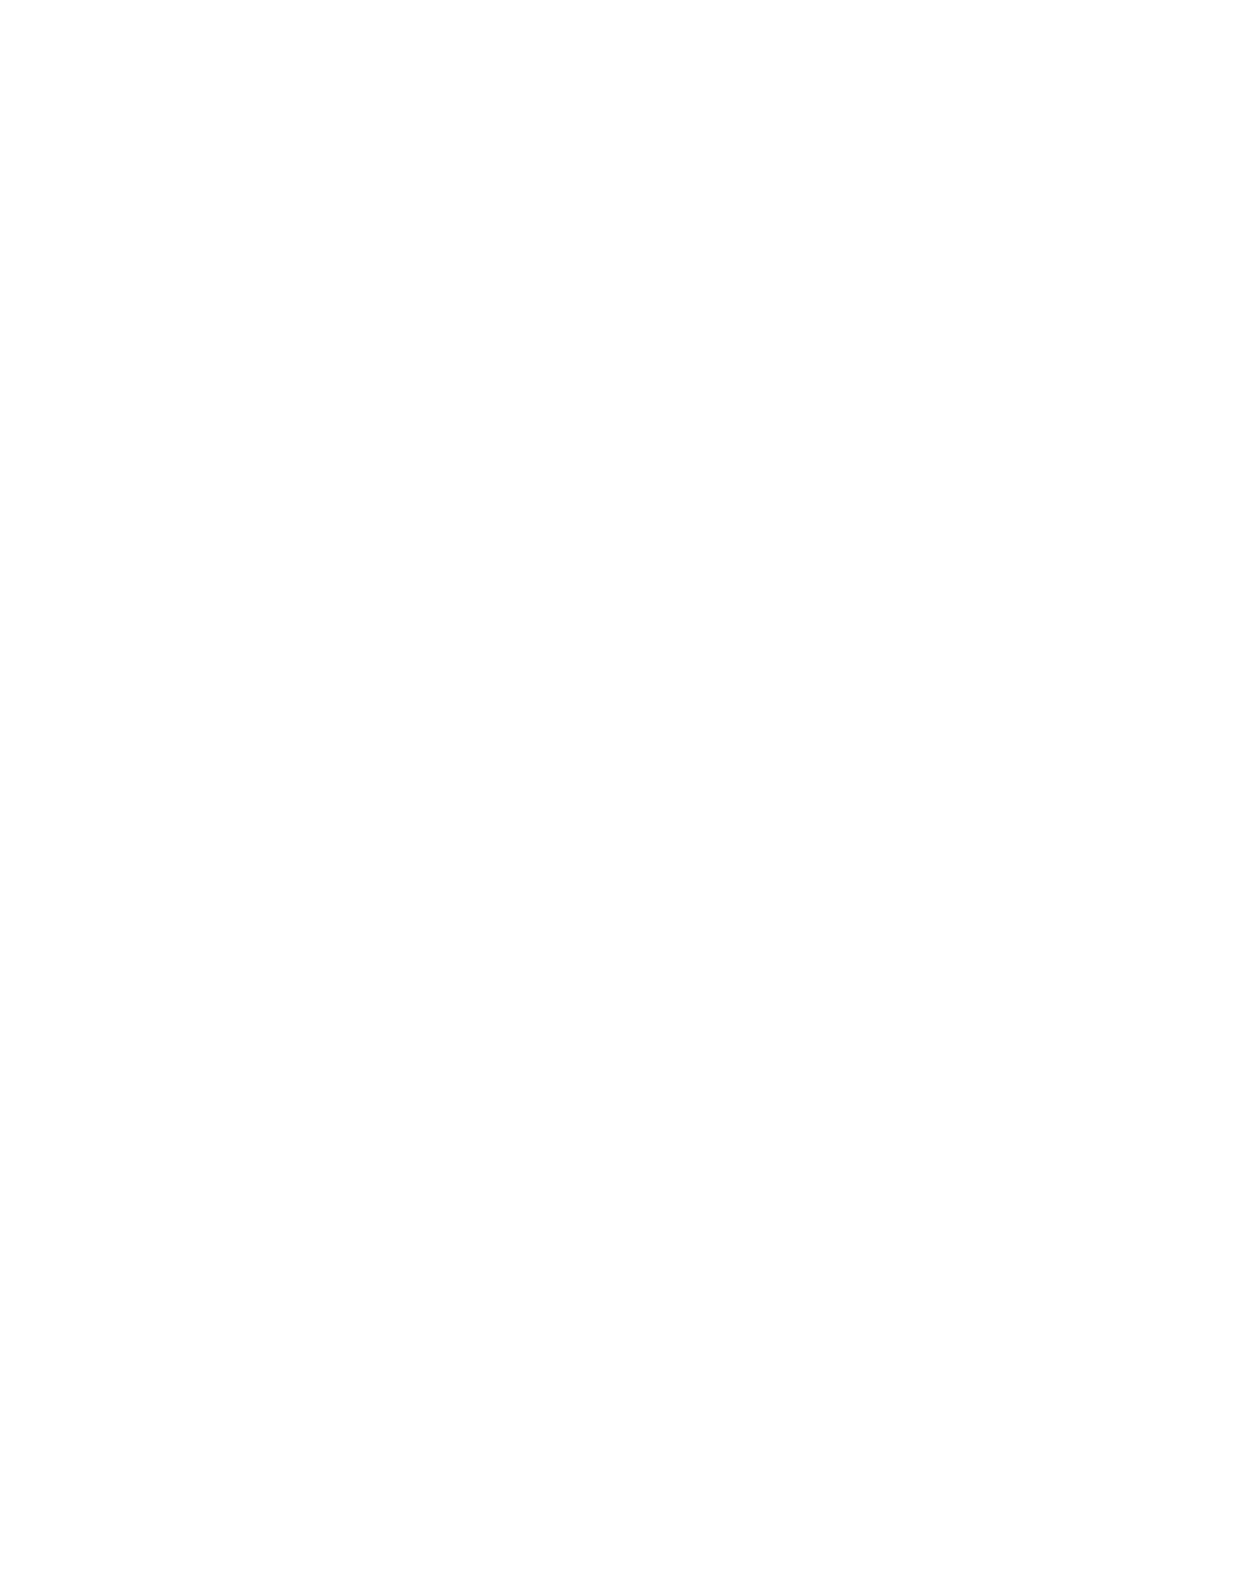 Compugen logo for dark backgrounds (transparent PNG)